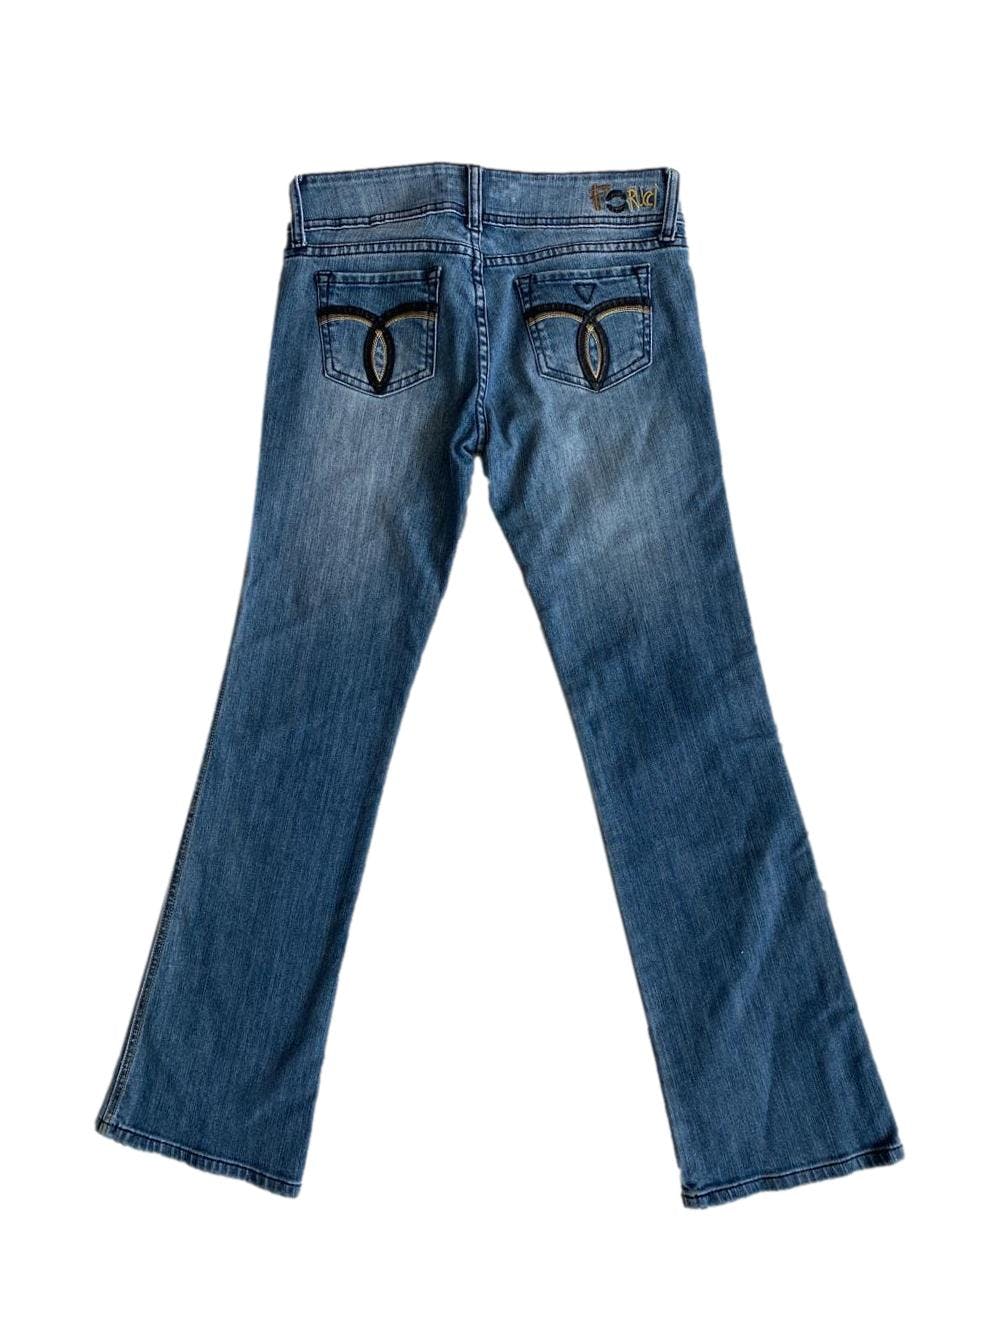 Jeans Fiorucci con detalle de cuero negro en los bolsillos. Cintura: 72cm, largo: 96cm. 